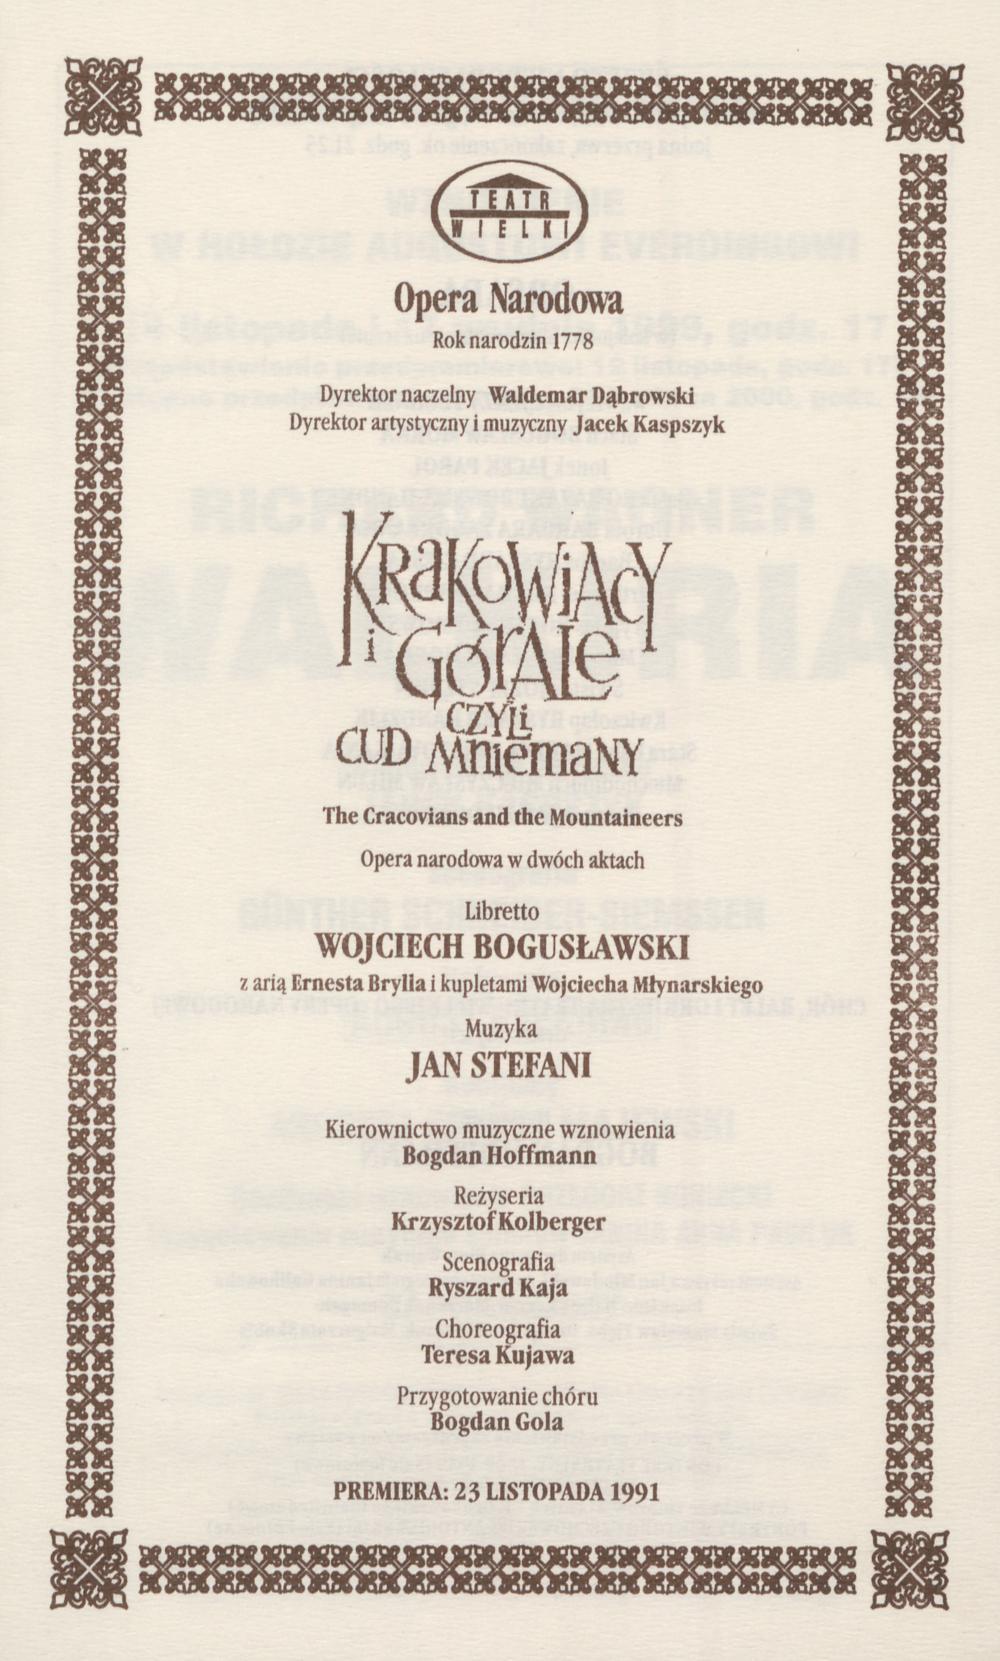 Wkładka Obsadowa.„Krakowiacy i Górale czyli Cud mniemany” Wojciech Bogusławski 11-11-1999